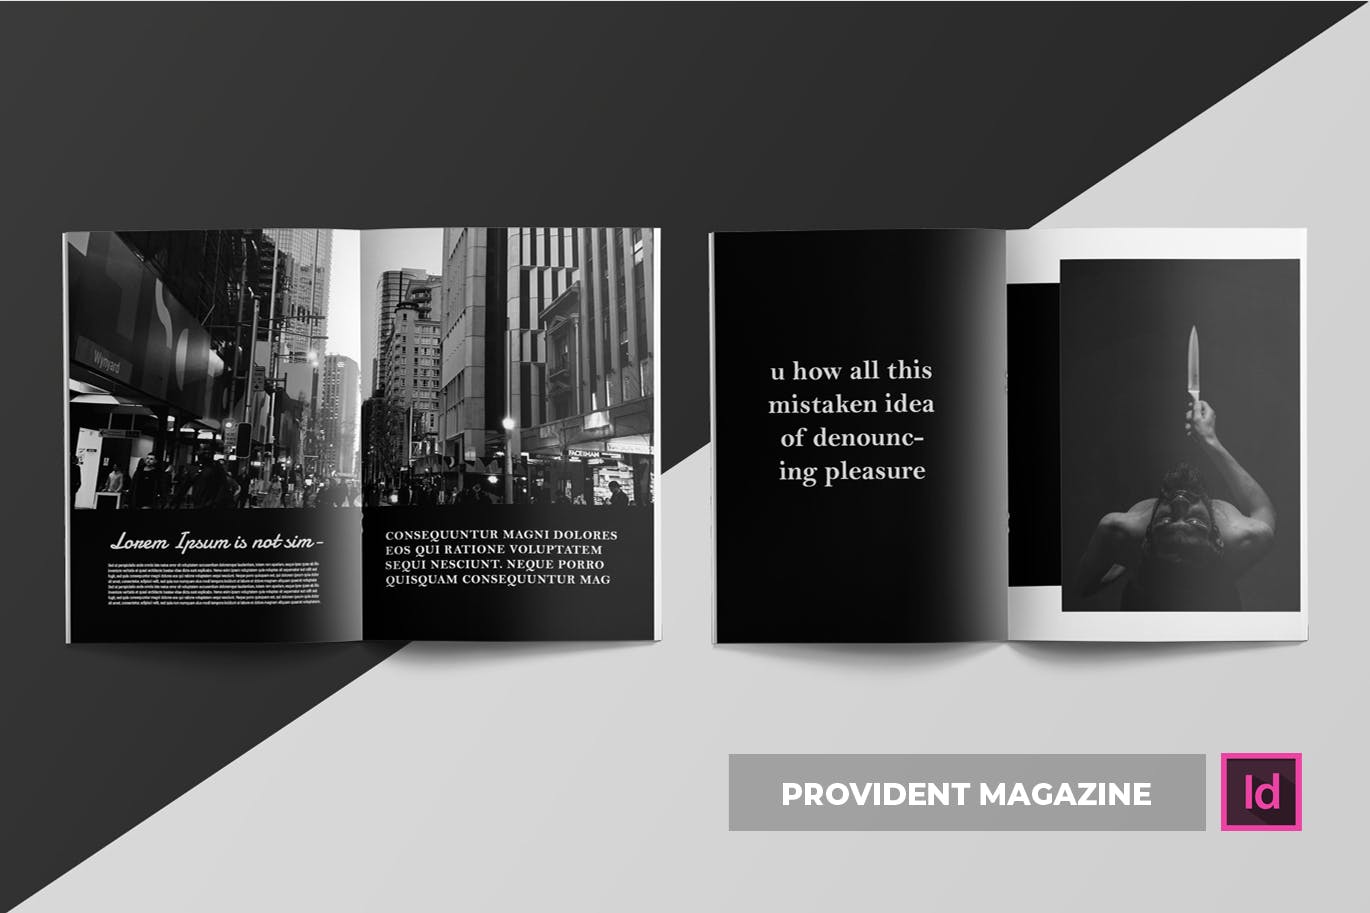 高端摄影主题A4蚂蚁素材精选杂志版式设计INDD模板 Provident | Magazine Template插图(3)